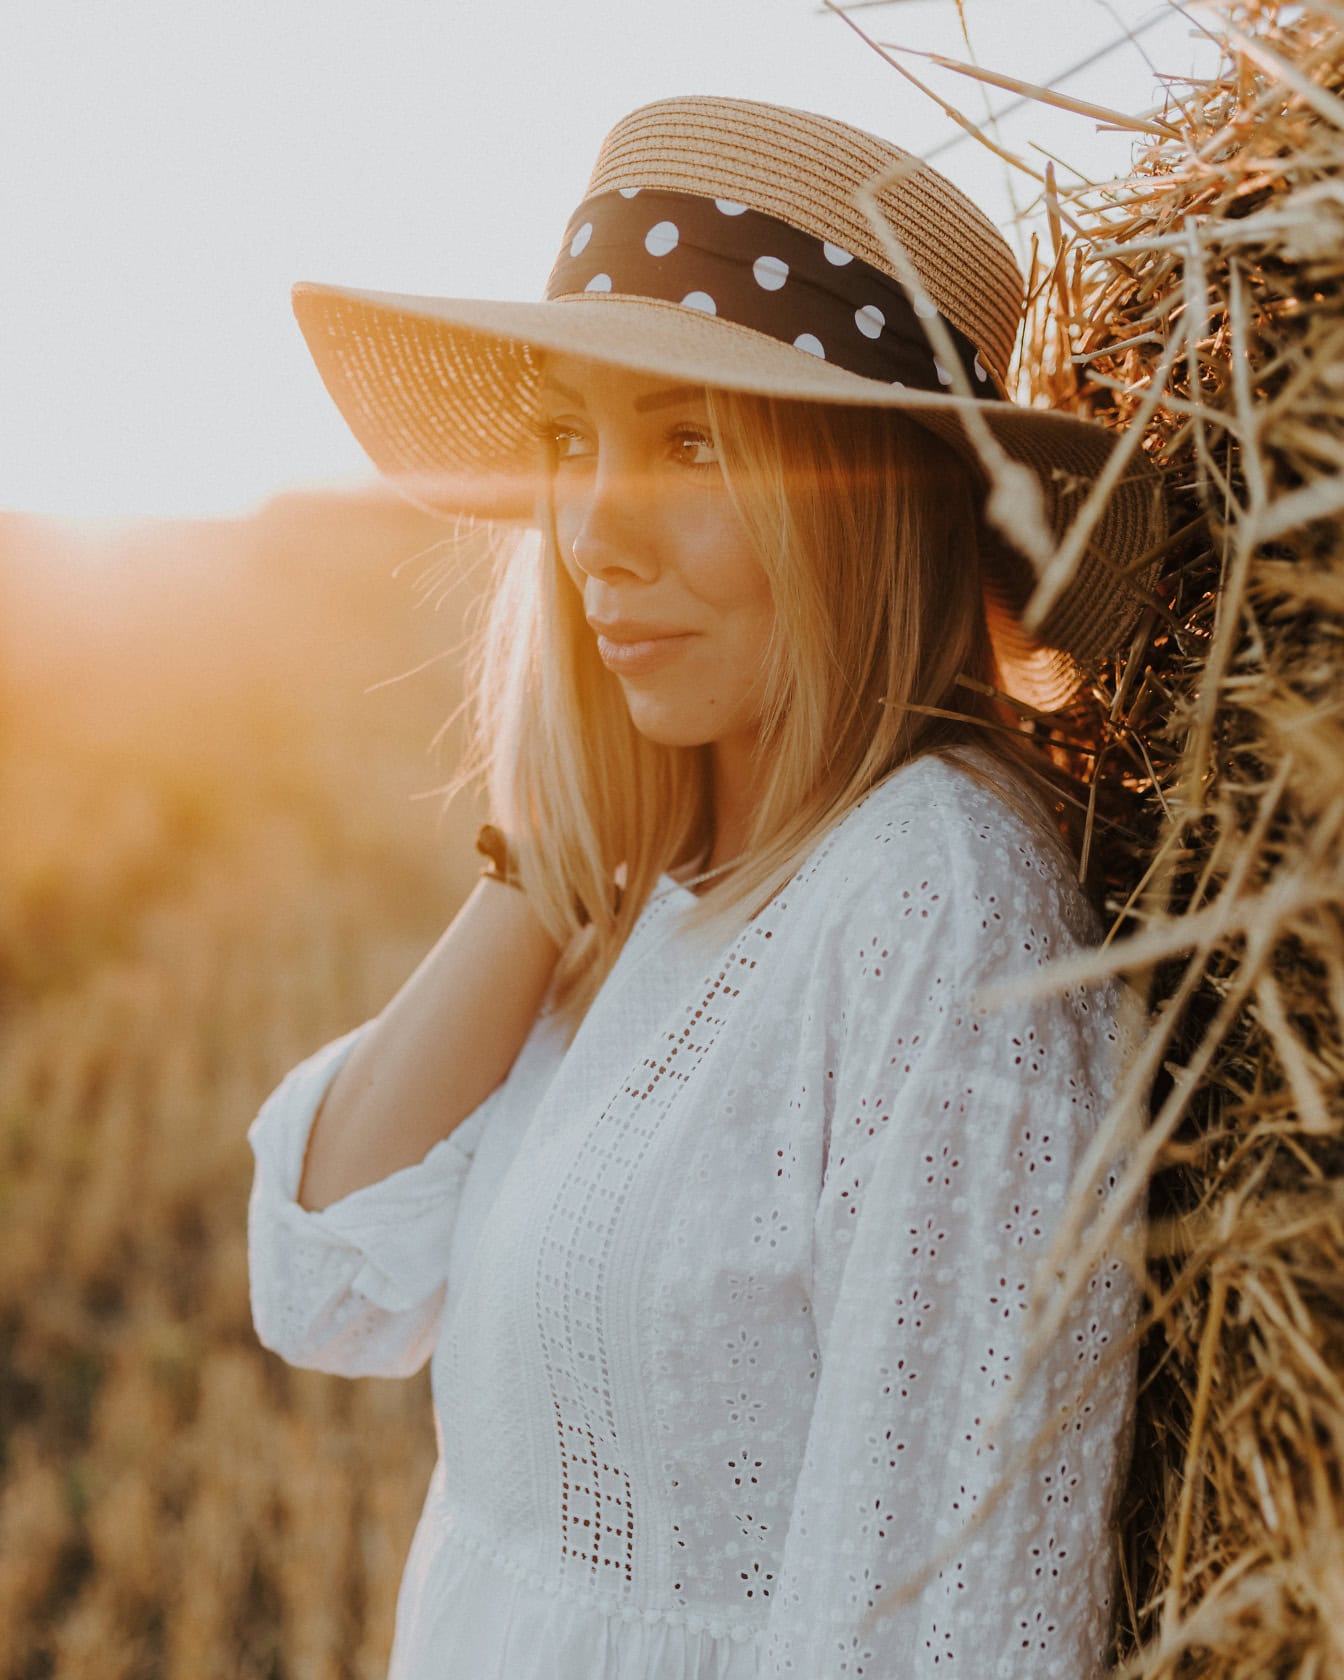 Portrét krásnej blond cowgirl v bielych vidieckych šatách a slamenom klobúku pri opaľovaní na pšeničnom poli opierajúcom sa o kopu sena